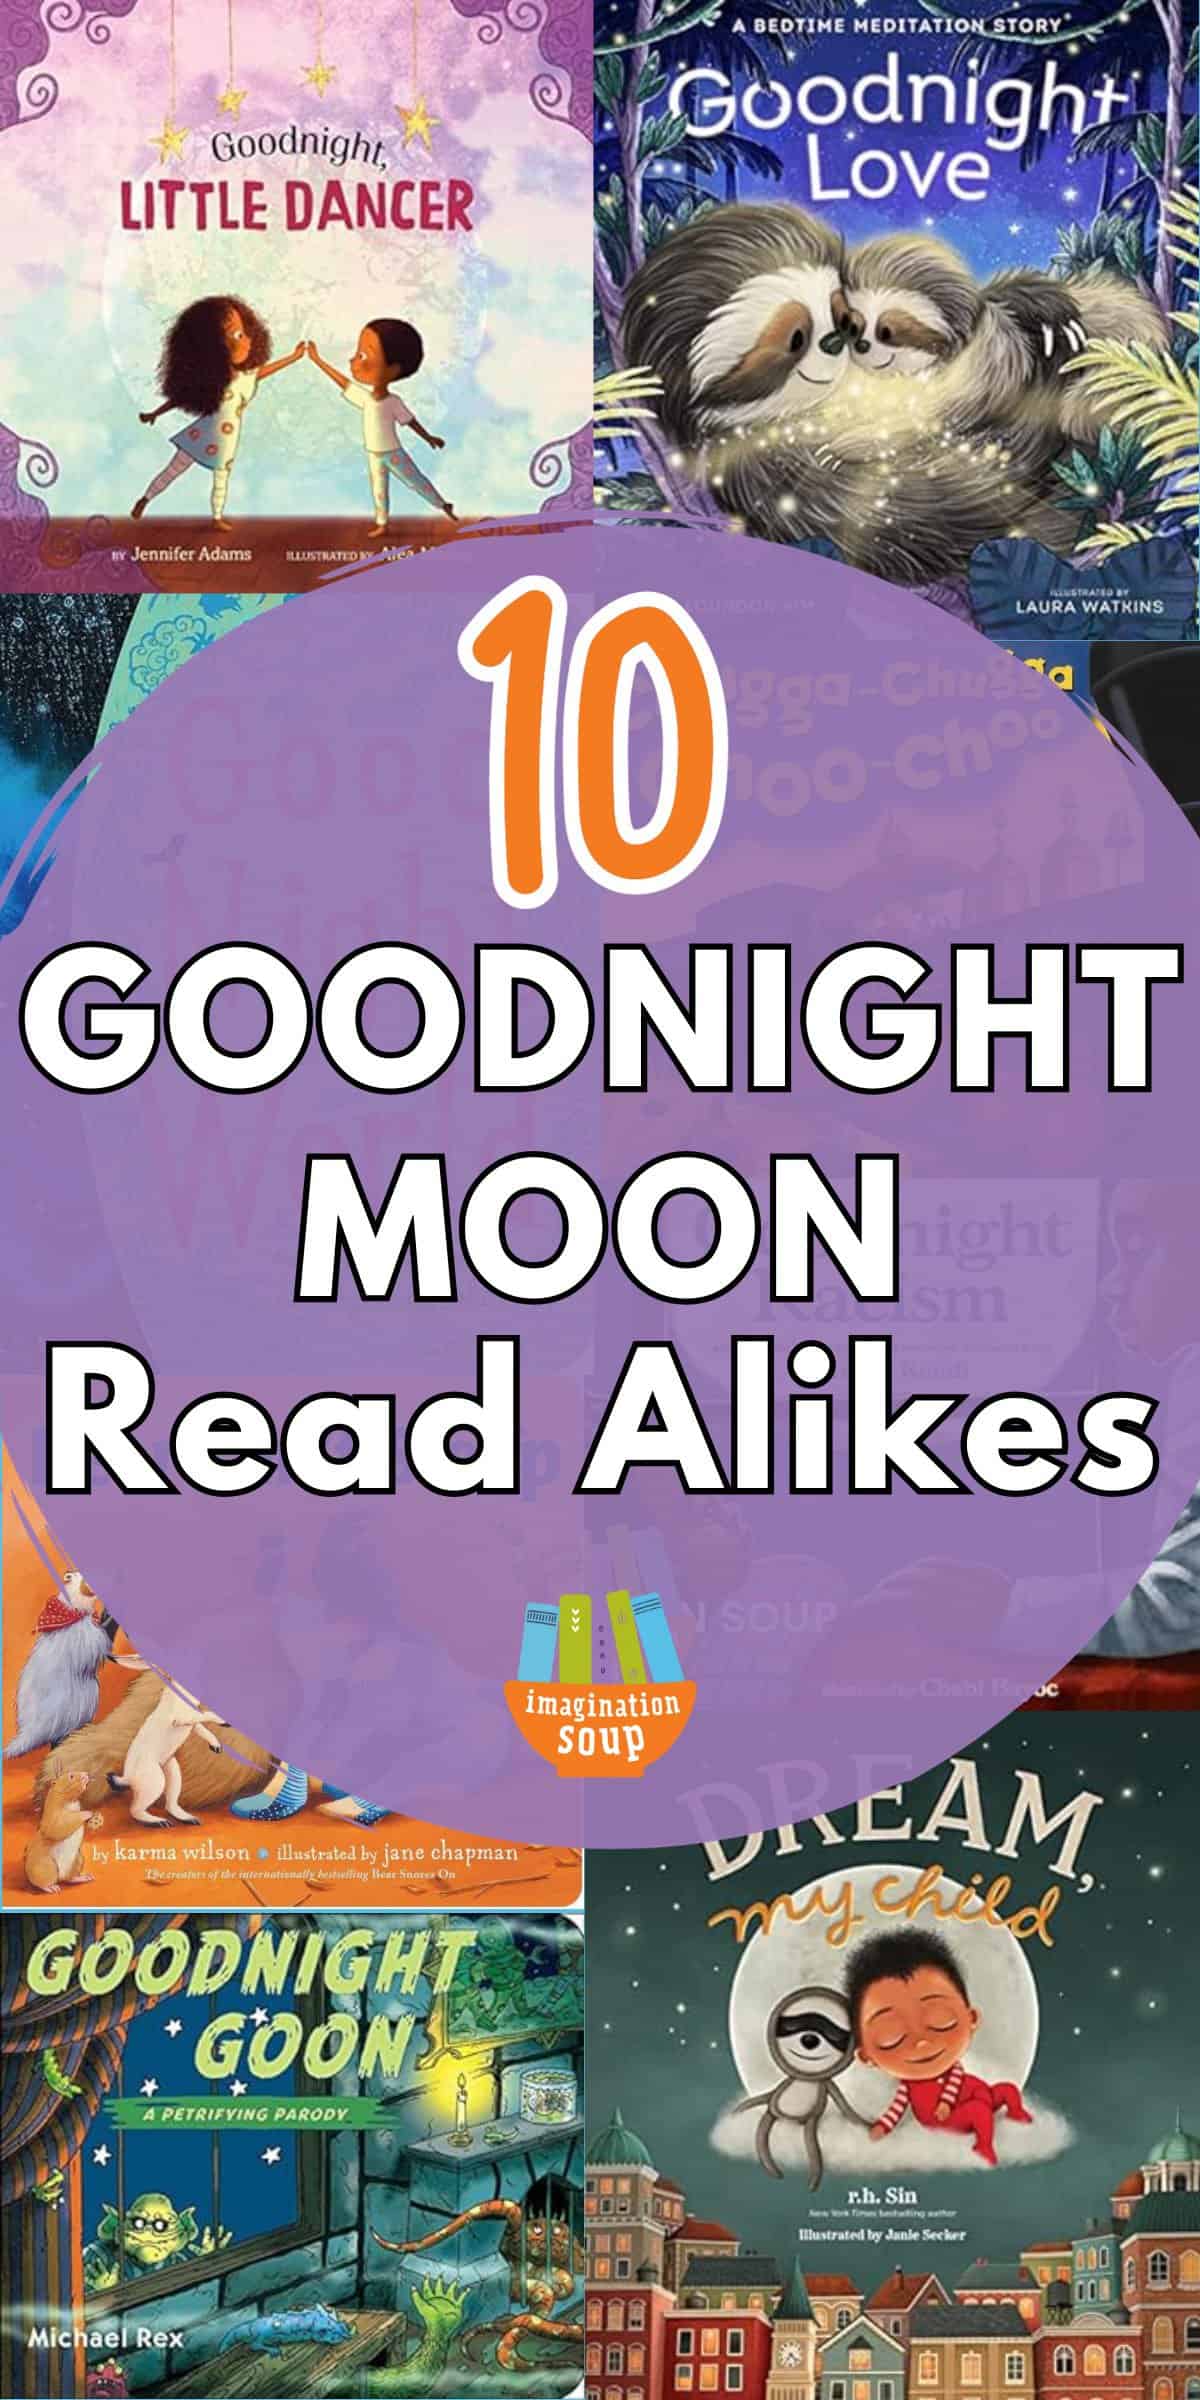 Goodnight Moon Read Alikes